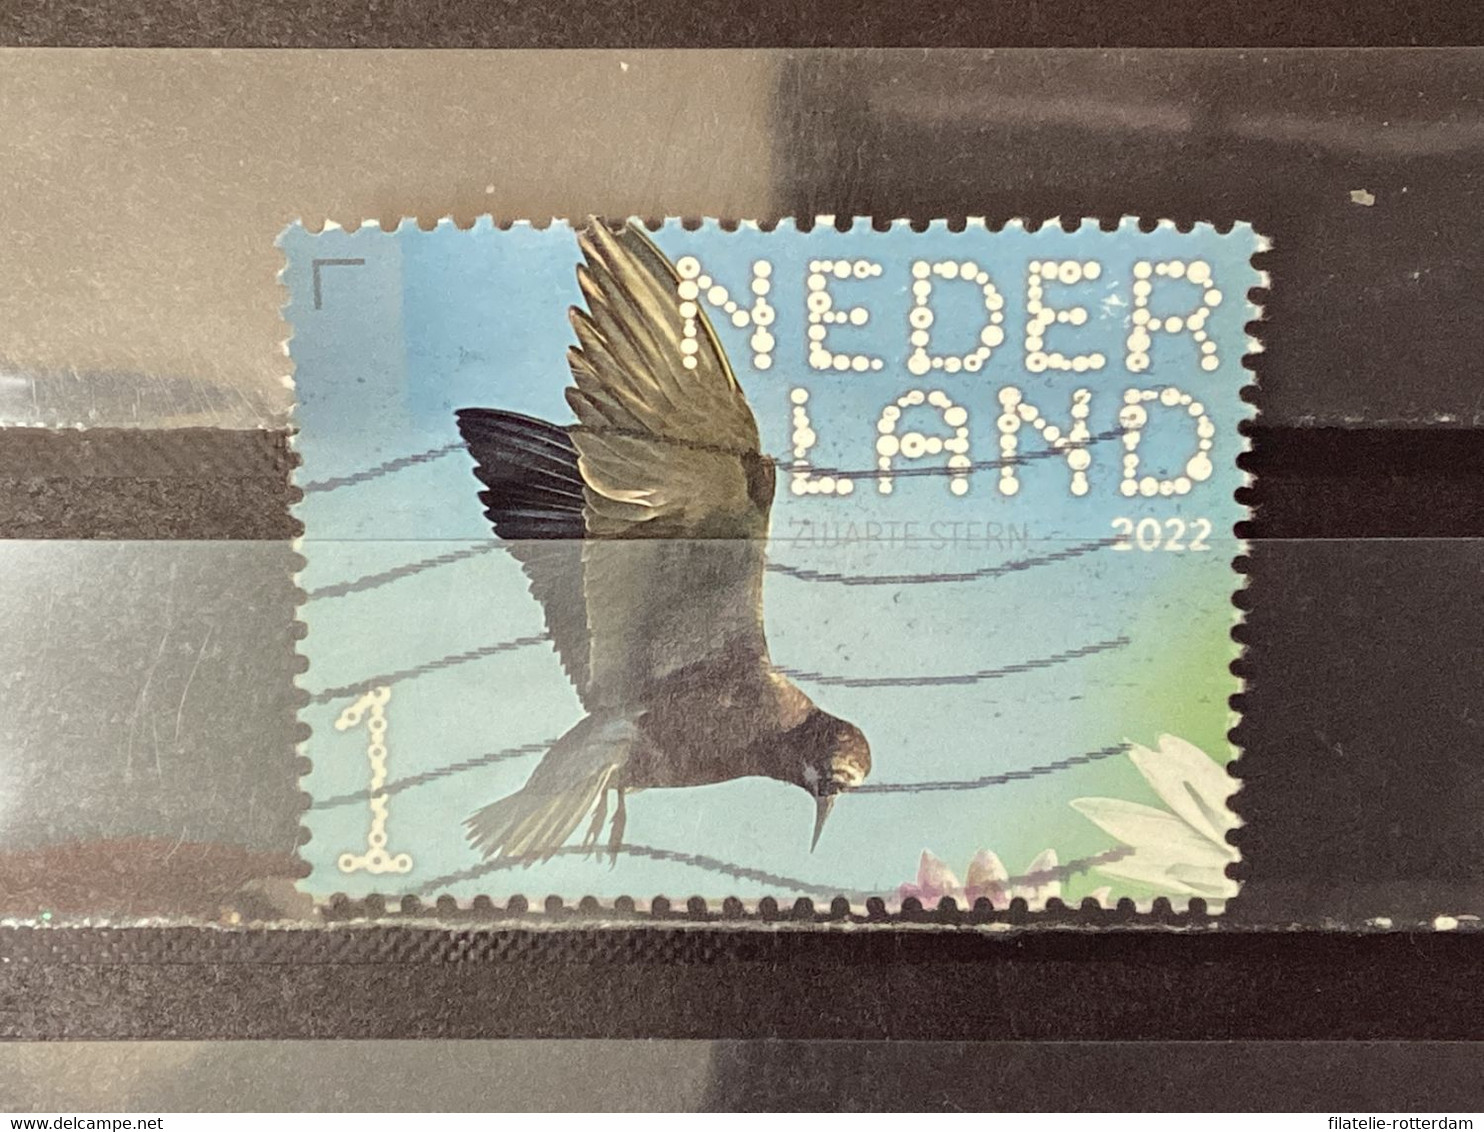 Nederland / The Netherlands - Zwarte Stern 2022 - Used Stamps